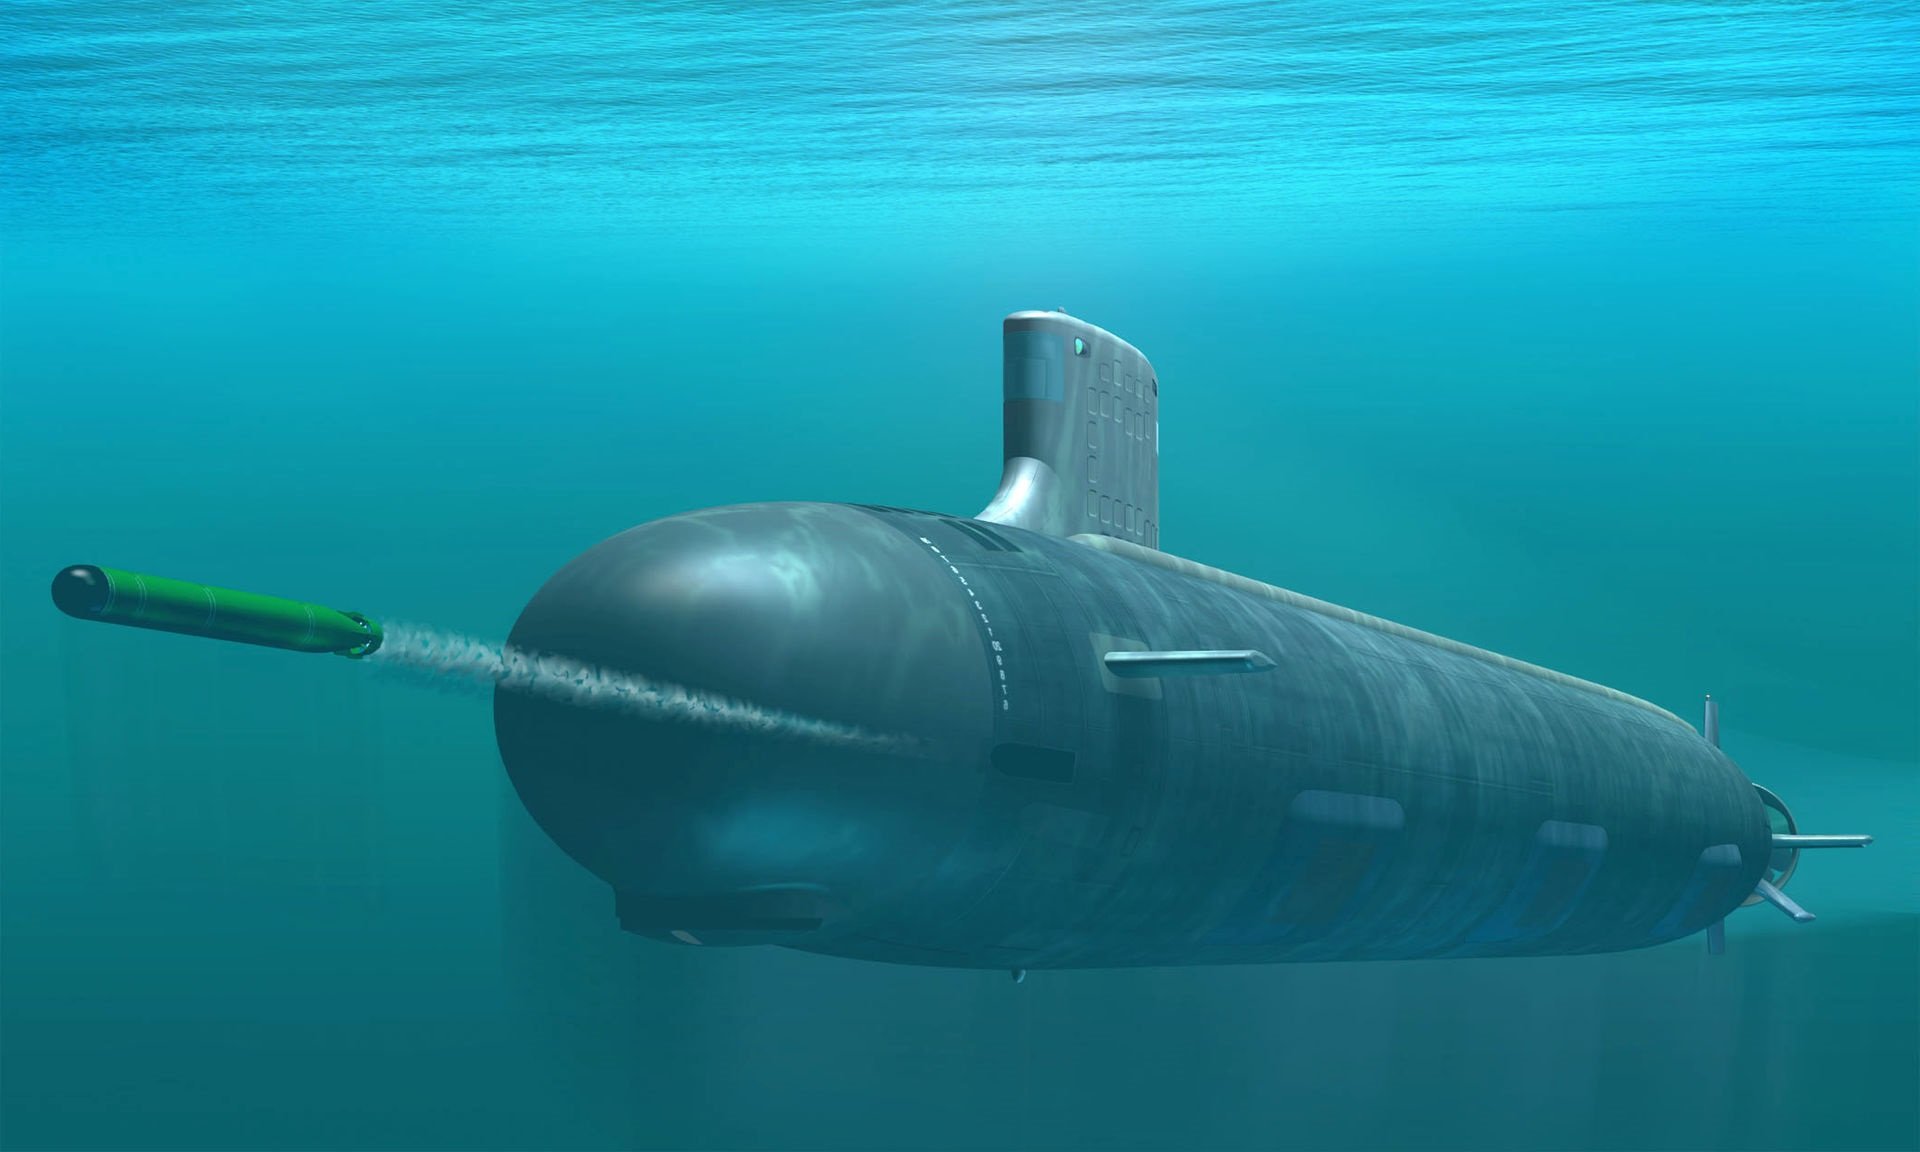 us navy submarine lost at sea